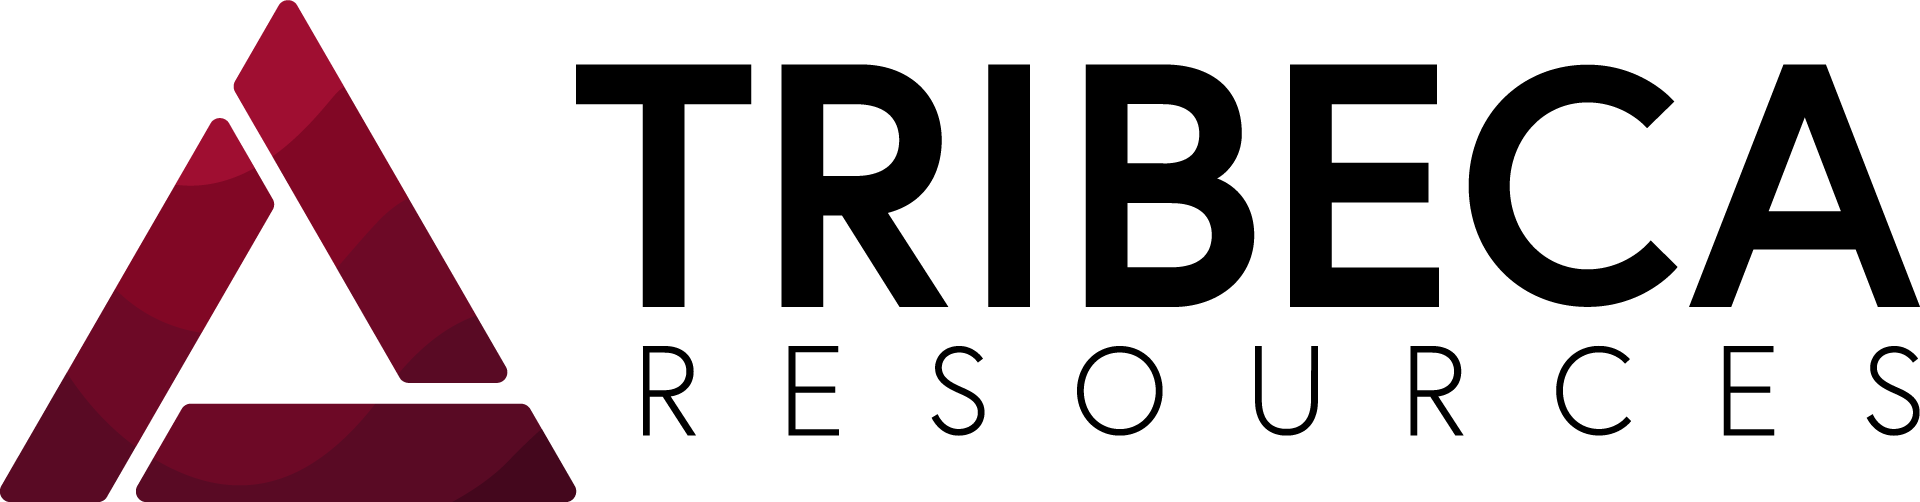 Tribeca Resources Corporation Logo